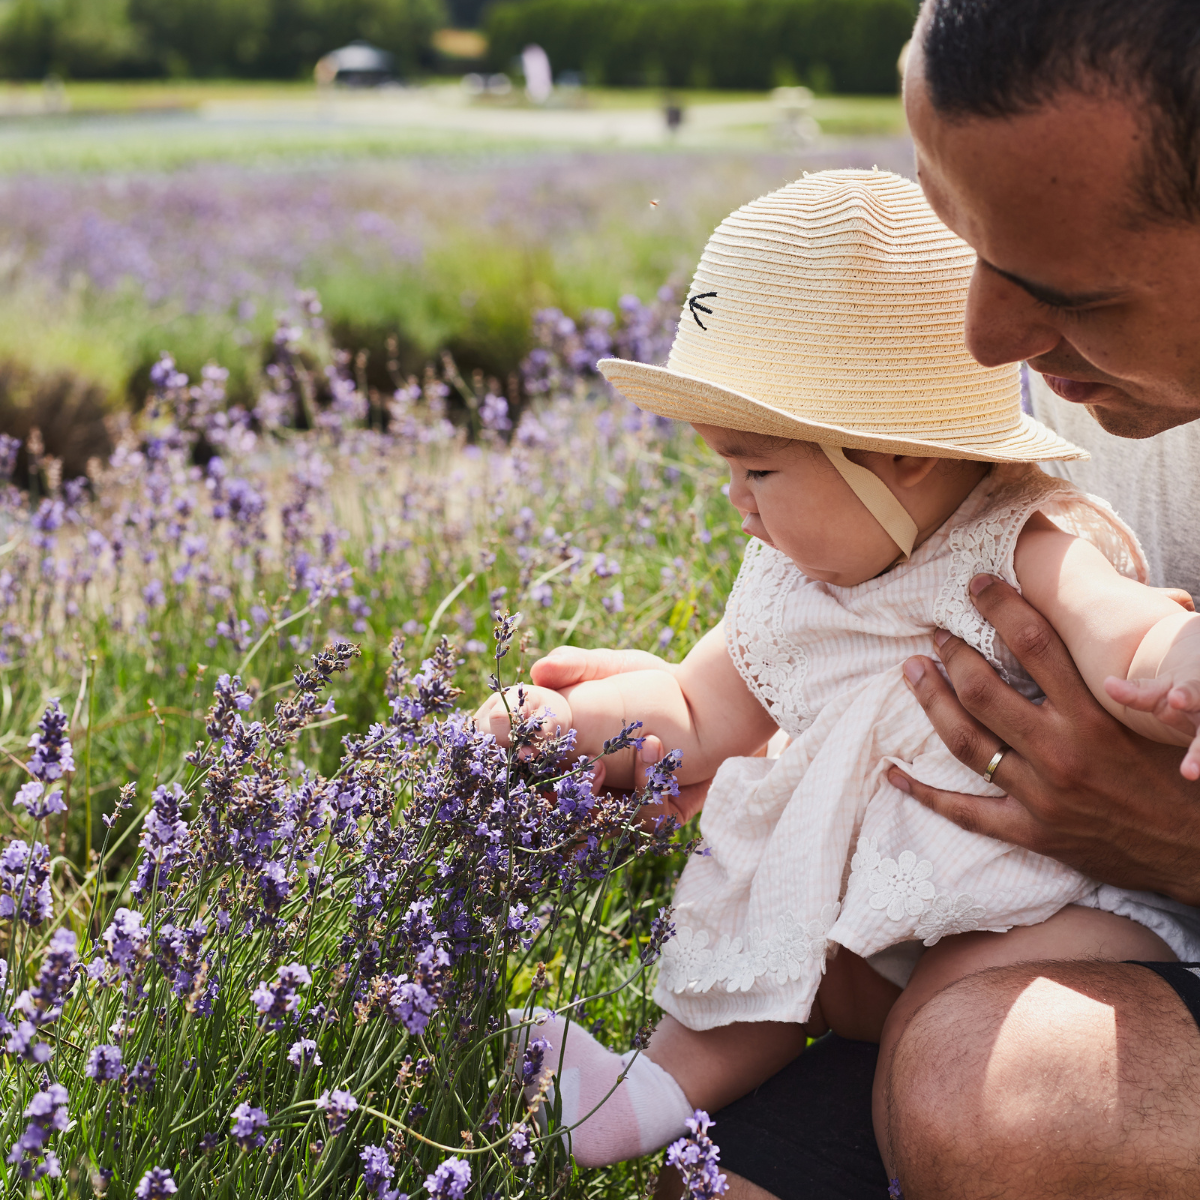 Père et fille dans un champ de lavande | Family in lavender field near Montreal